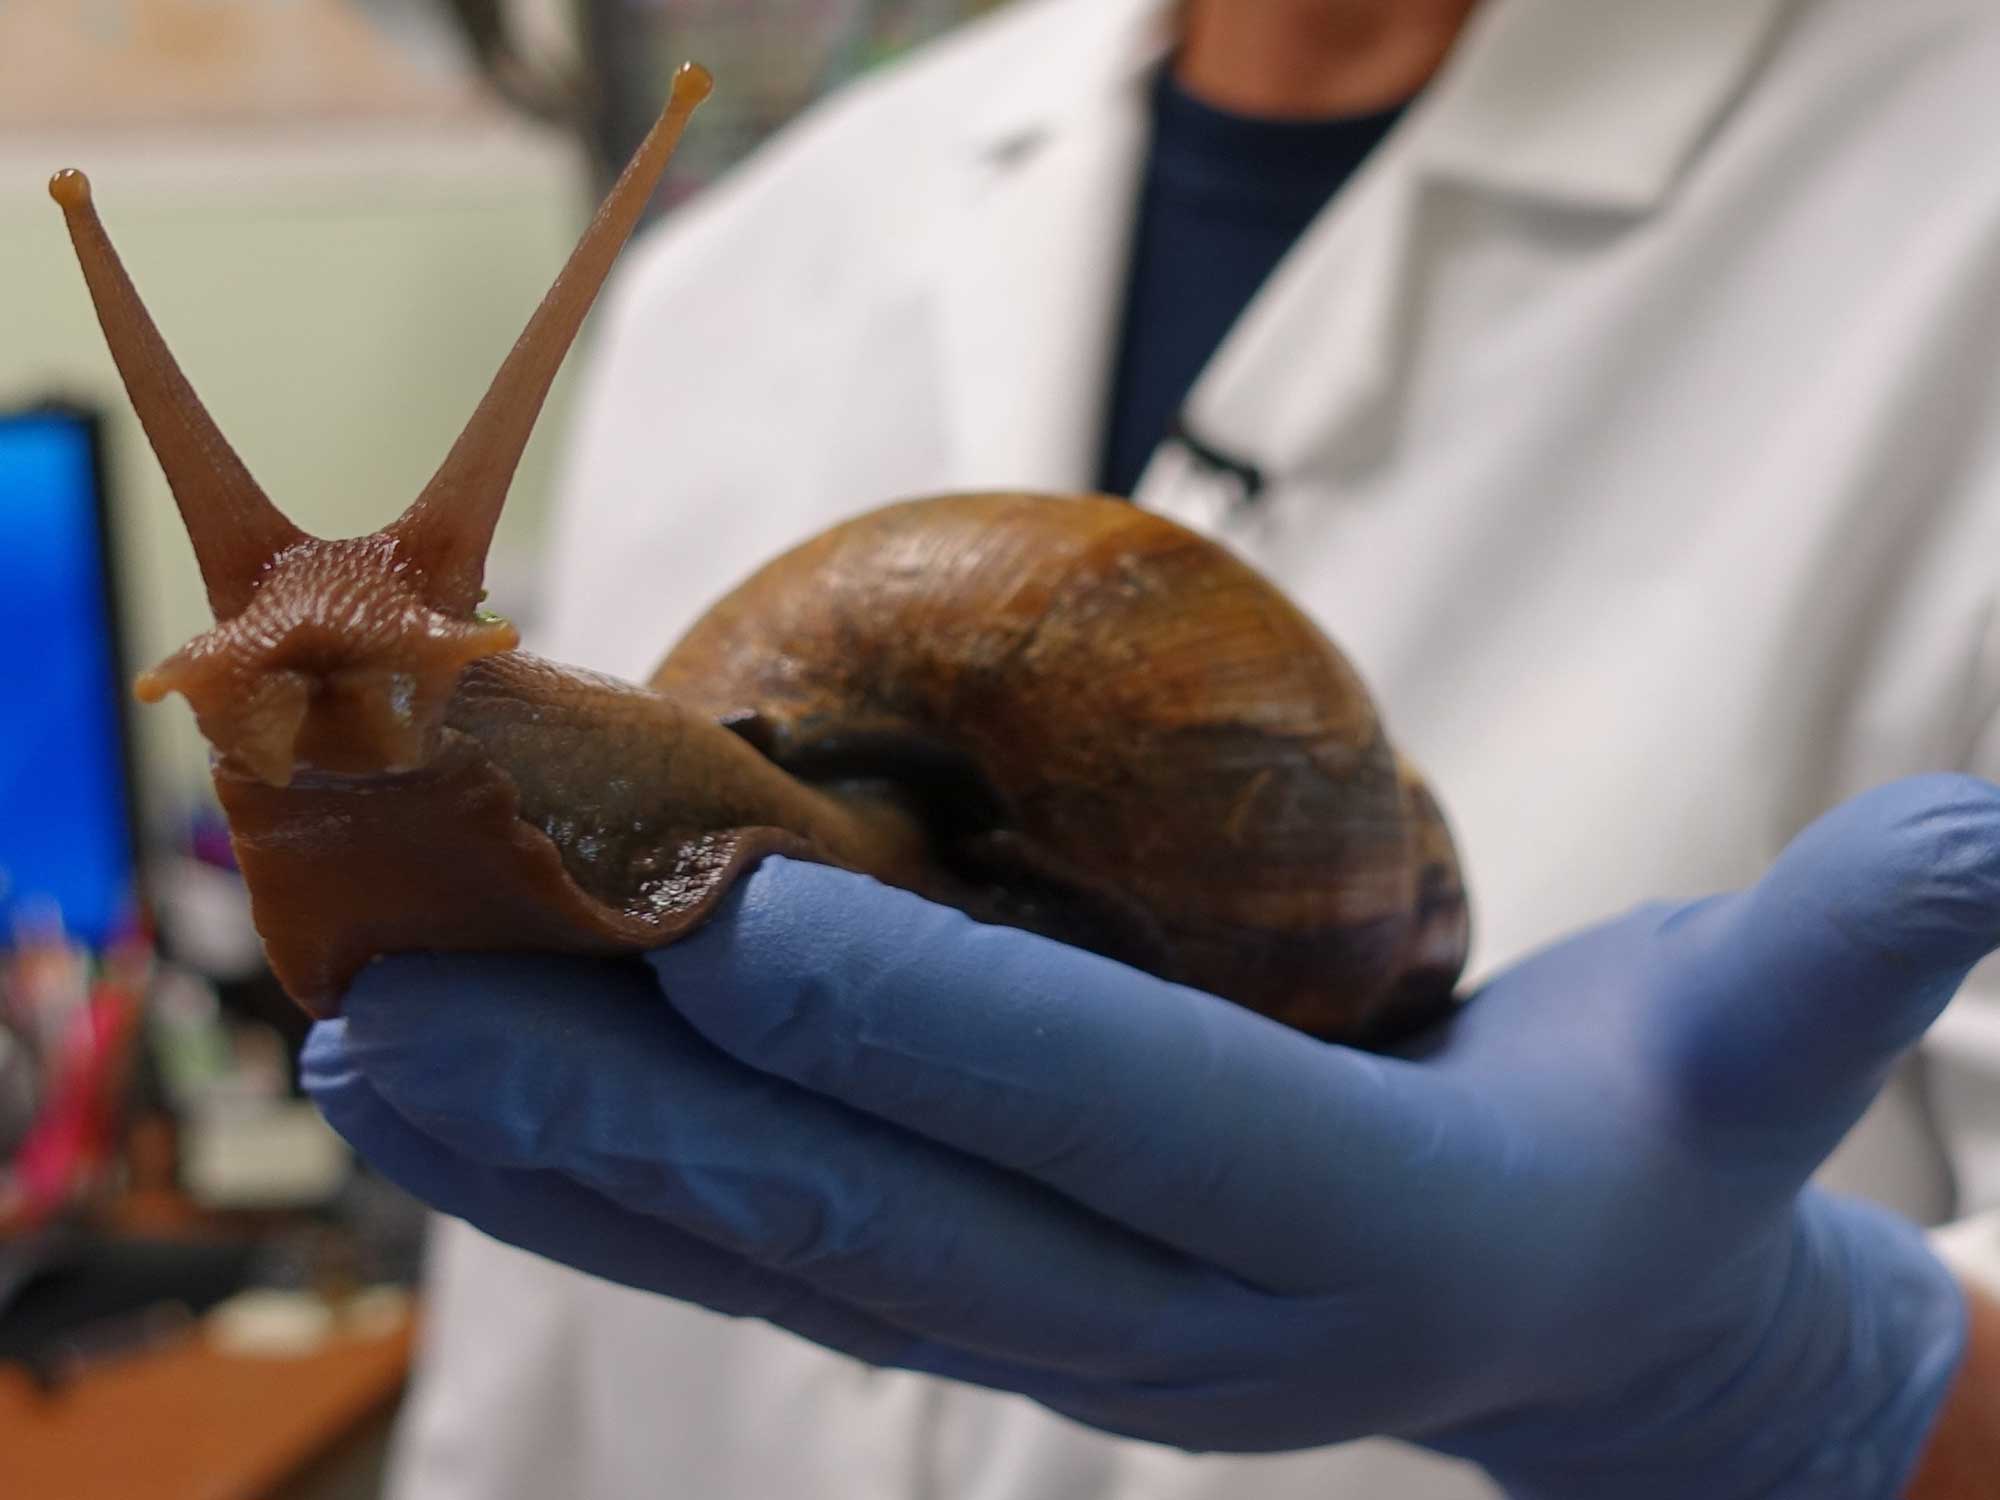 Large, damaging snails have invaded Florida